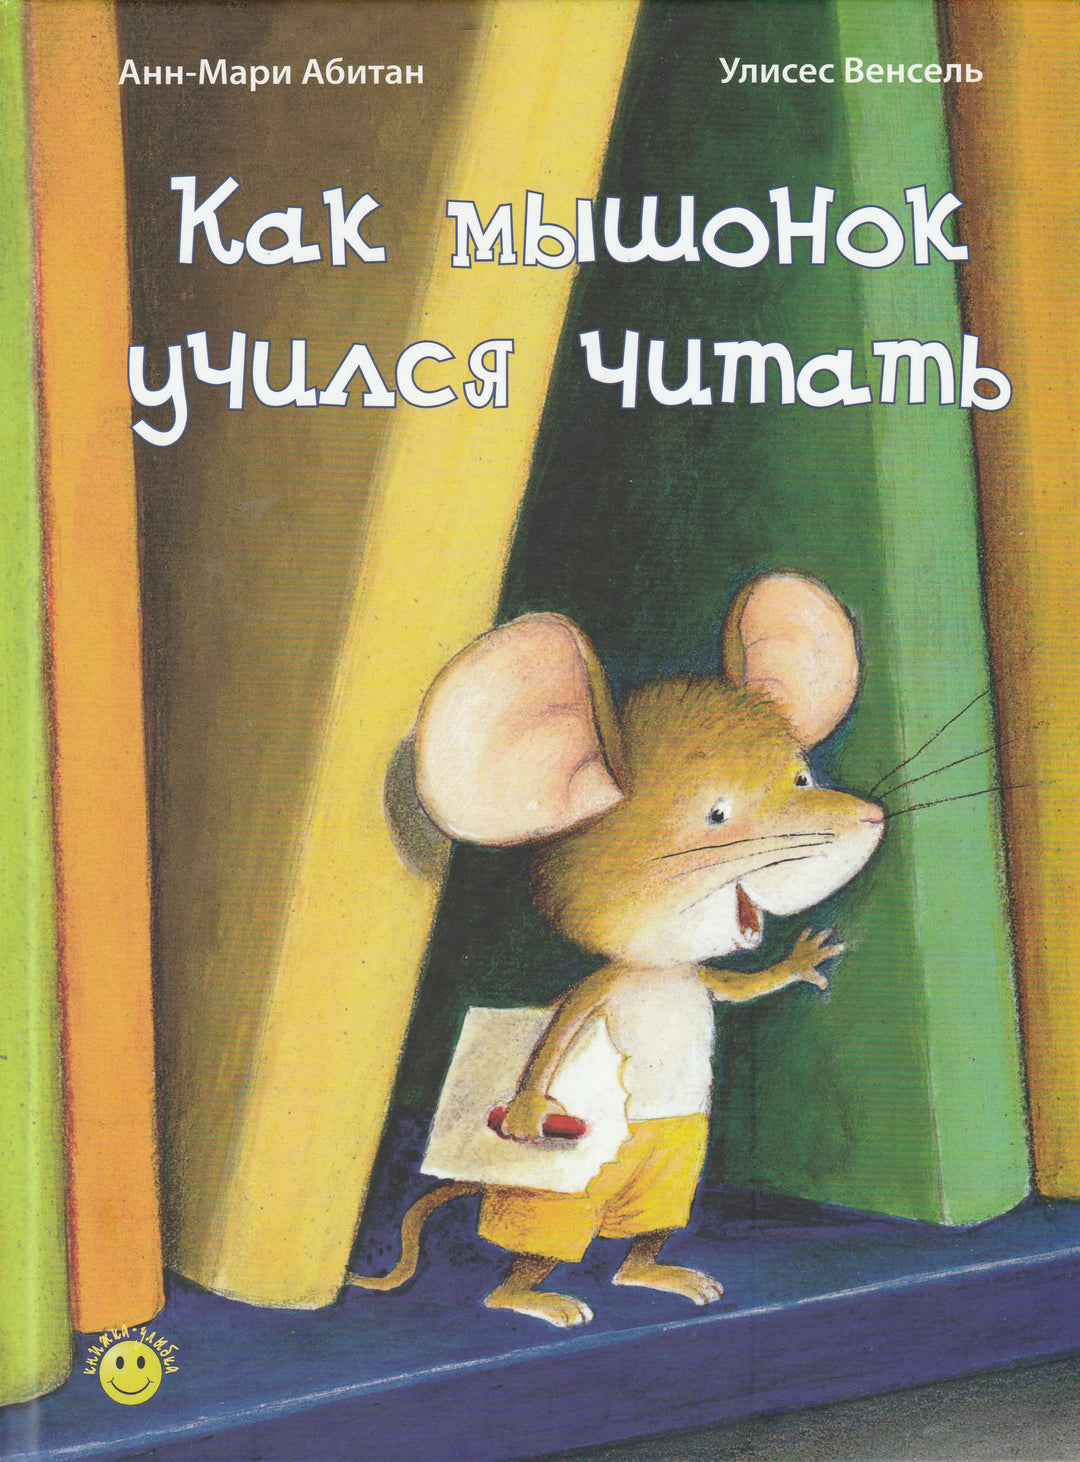 Как мышонок учился читать. Книжка-Улыбка-Абитан Анн-Мари-Энас-Книга-Lookomorie